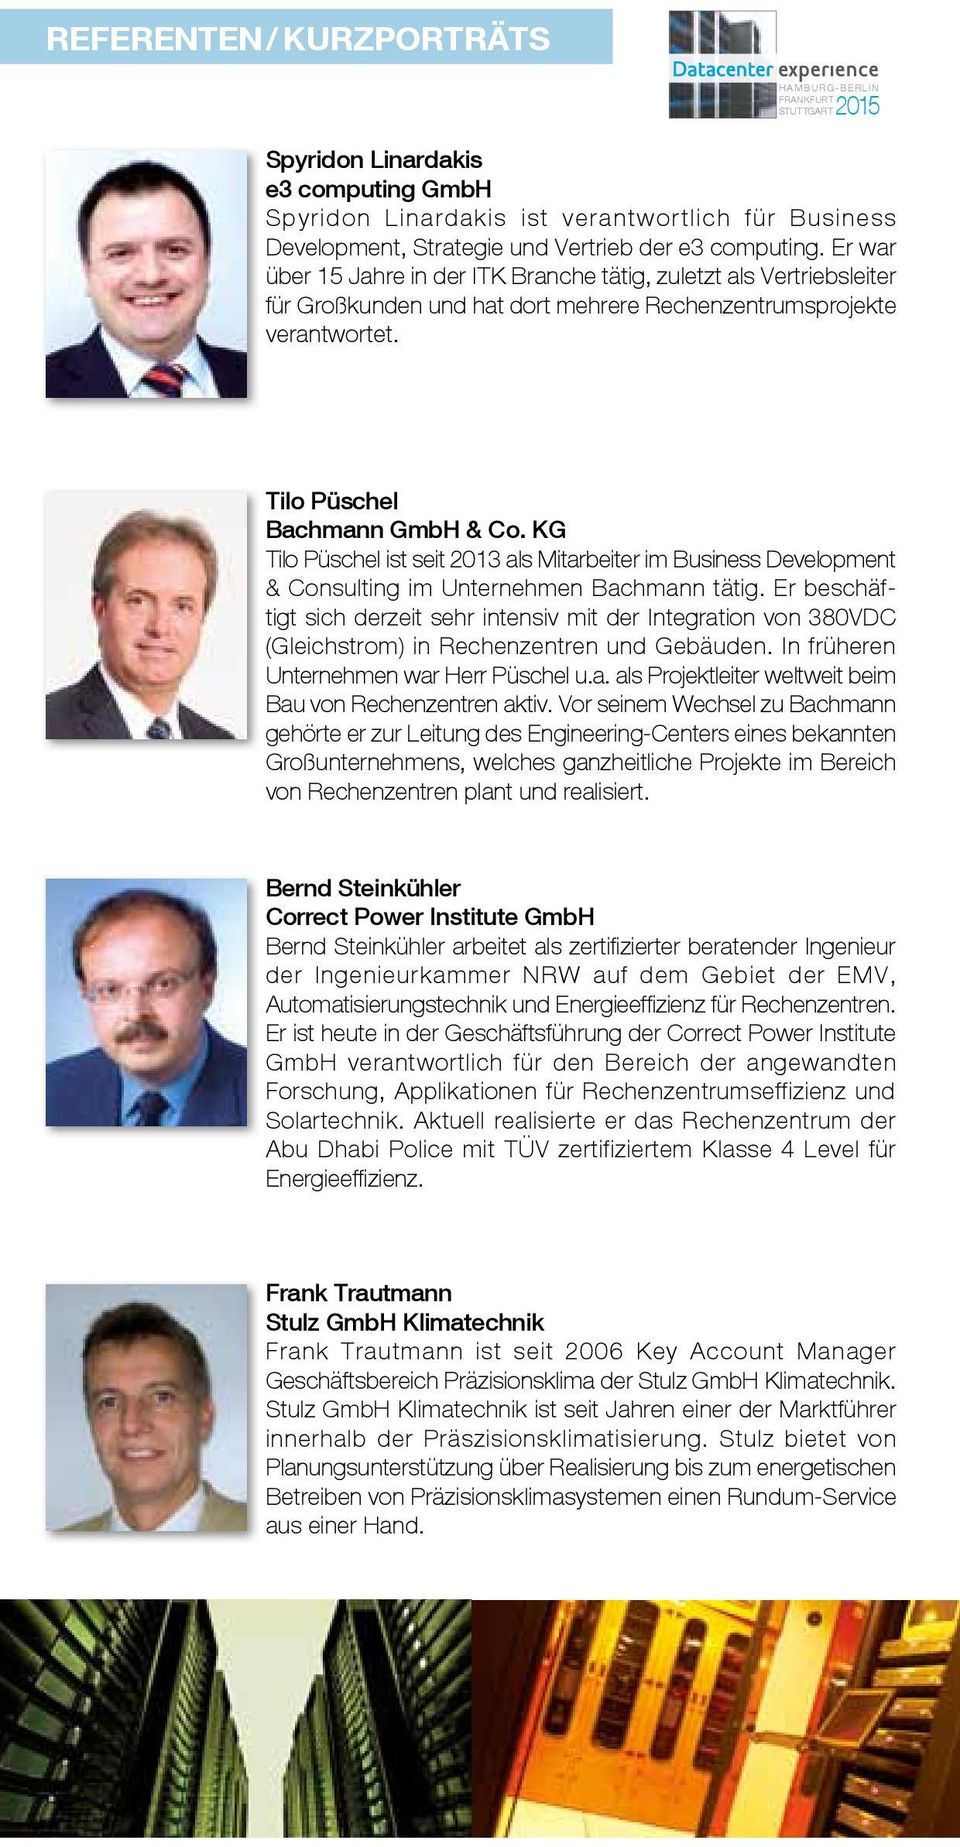 KG Tilo Püschel ist seit 2013 als Mitarbeiter im Business Development & Consulting im Unternehmen Bachmann tätig.